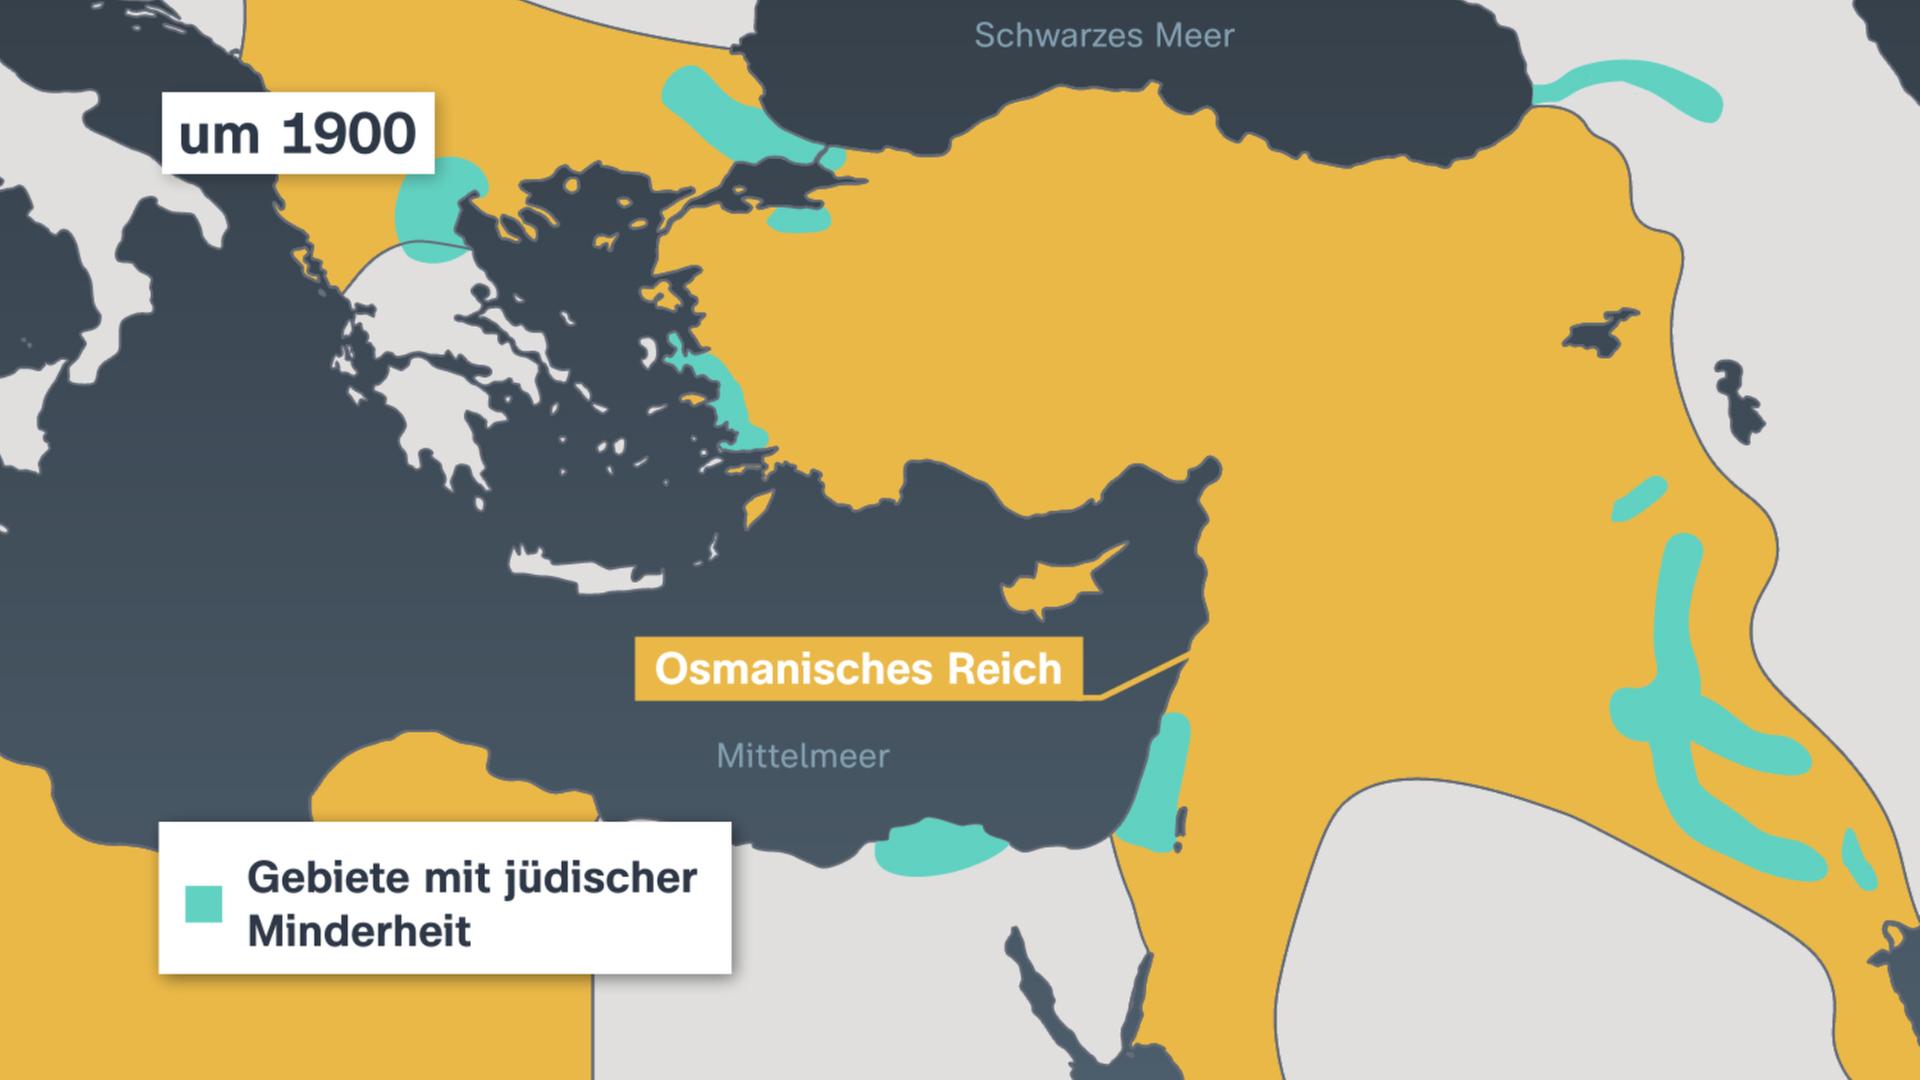 Karte zeigt das Osmanische Reich und die jüdischen Gebiete. Damals lebeten Muslime und Juden weitgehend friedlich zusammen. 